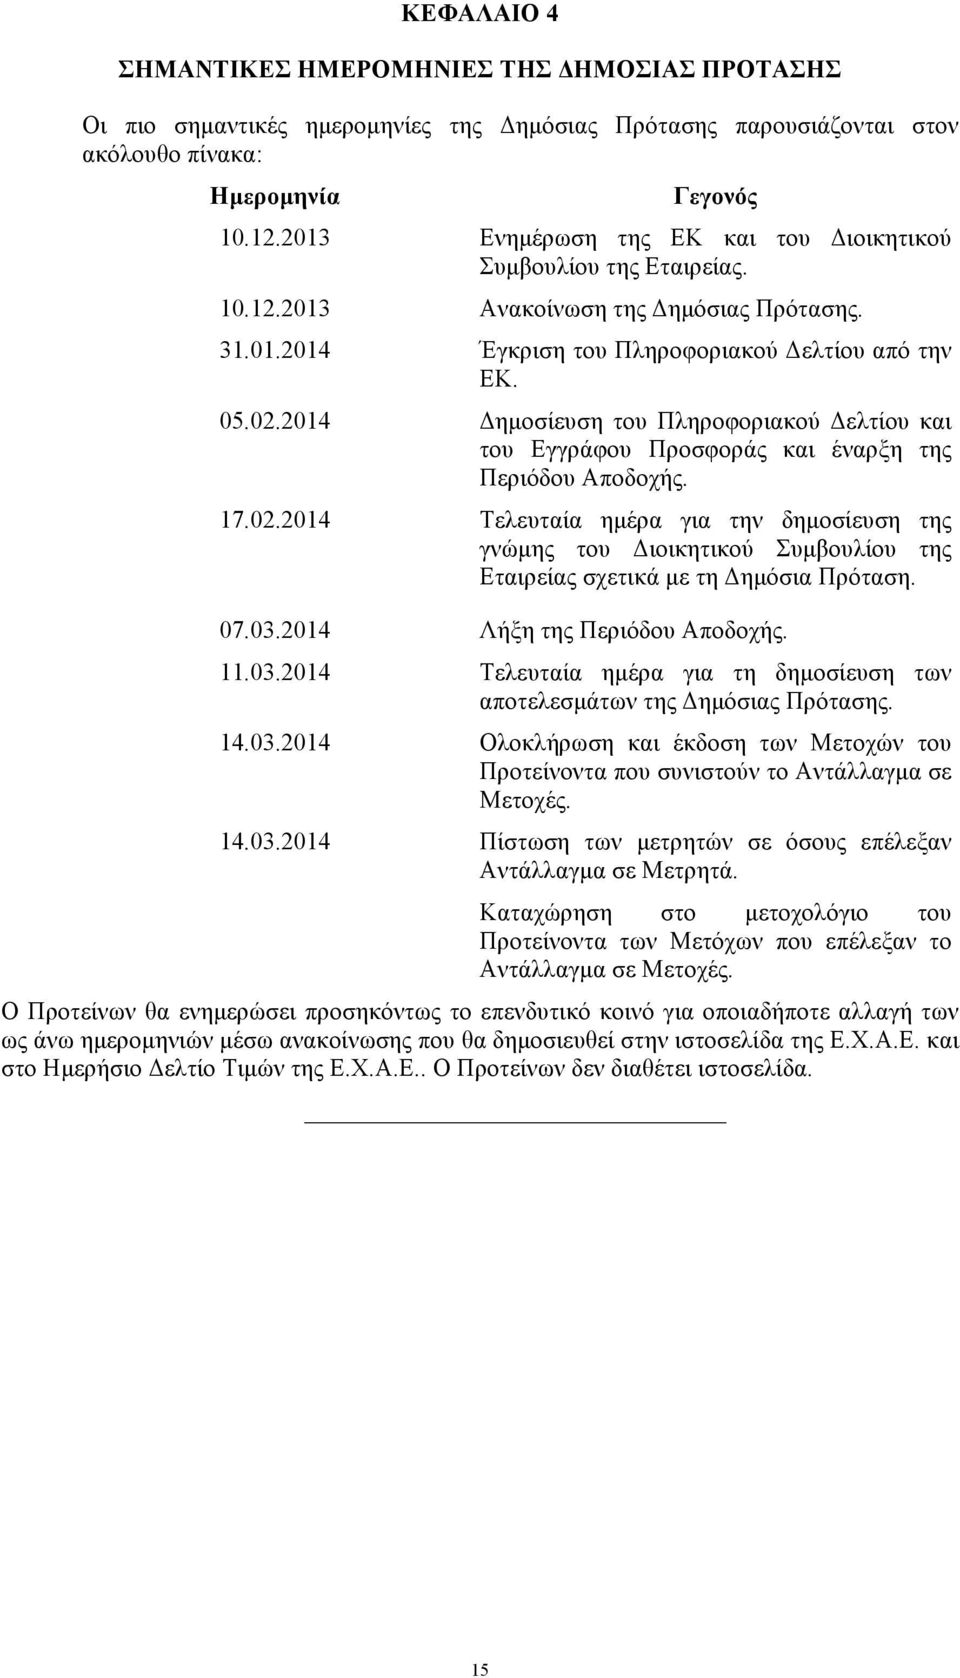 2014 Δηµοσίευση του Πληροφοριακού Δελτίου και του Εγγράφου Προσφοράς και έναρξη της Περιόδου Αποδοχής. 17.02.